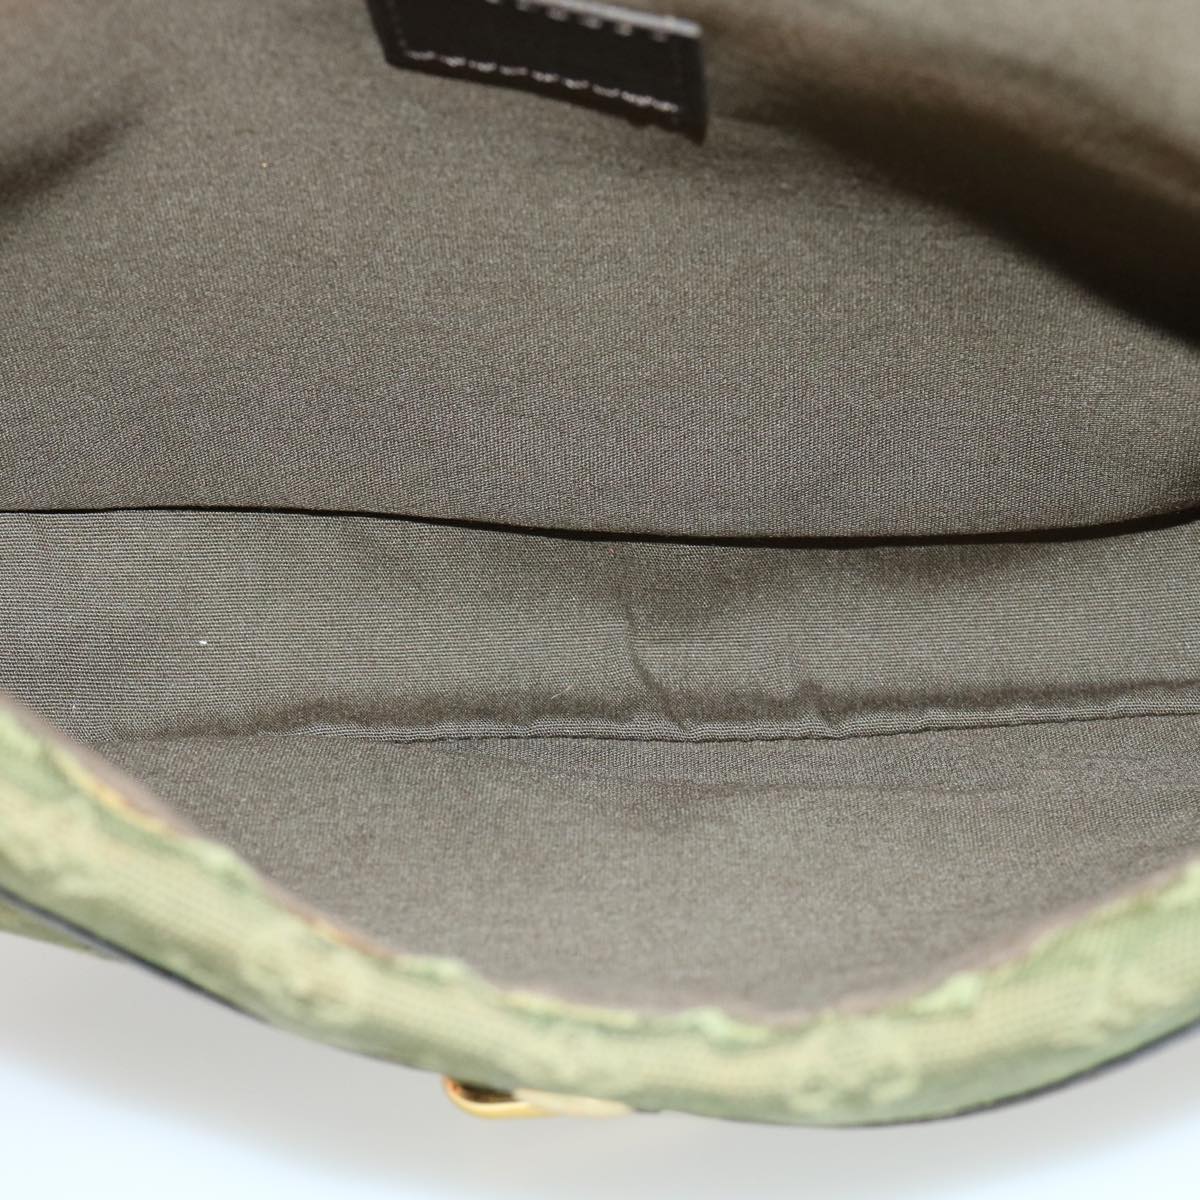 LOUIS VUITTON Monogram Mini Belanger Shoulder Bag TST Khaki M92673 Auth ar7147